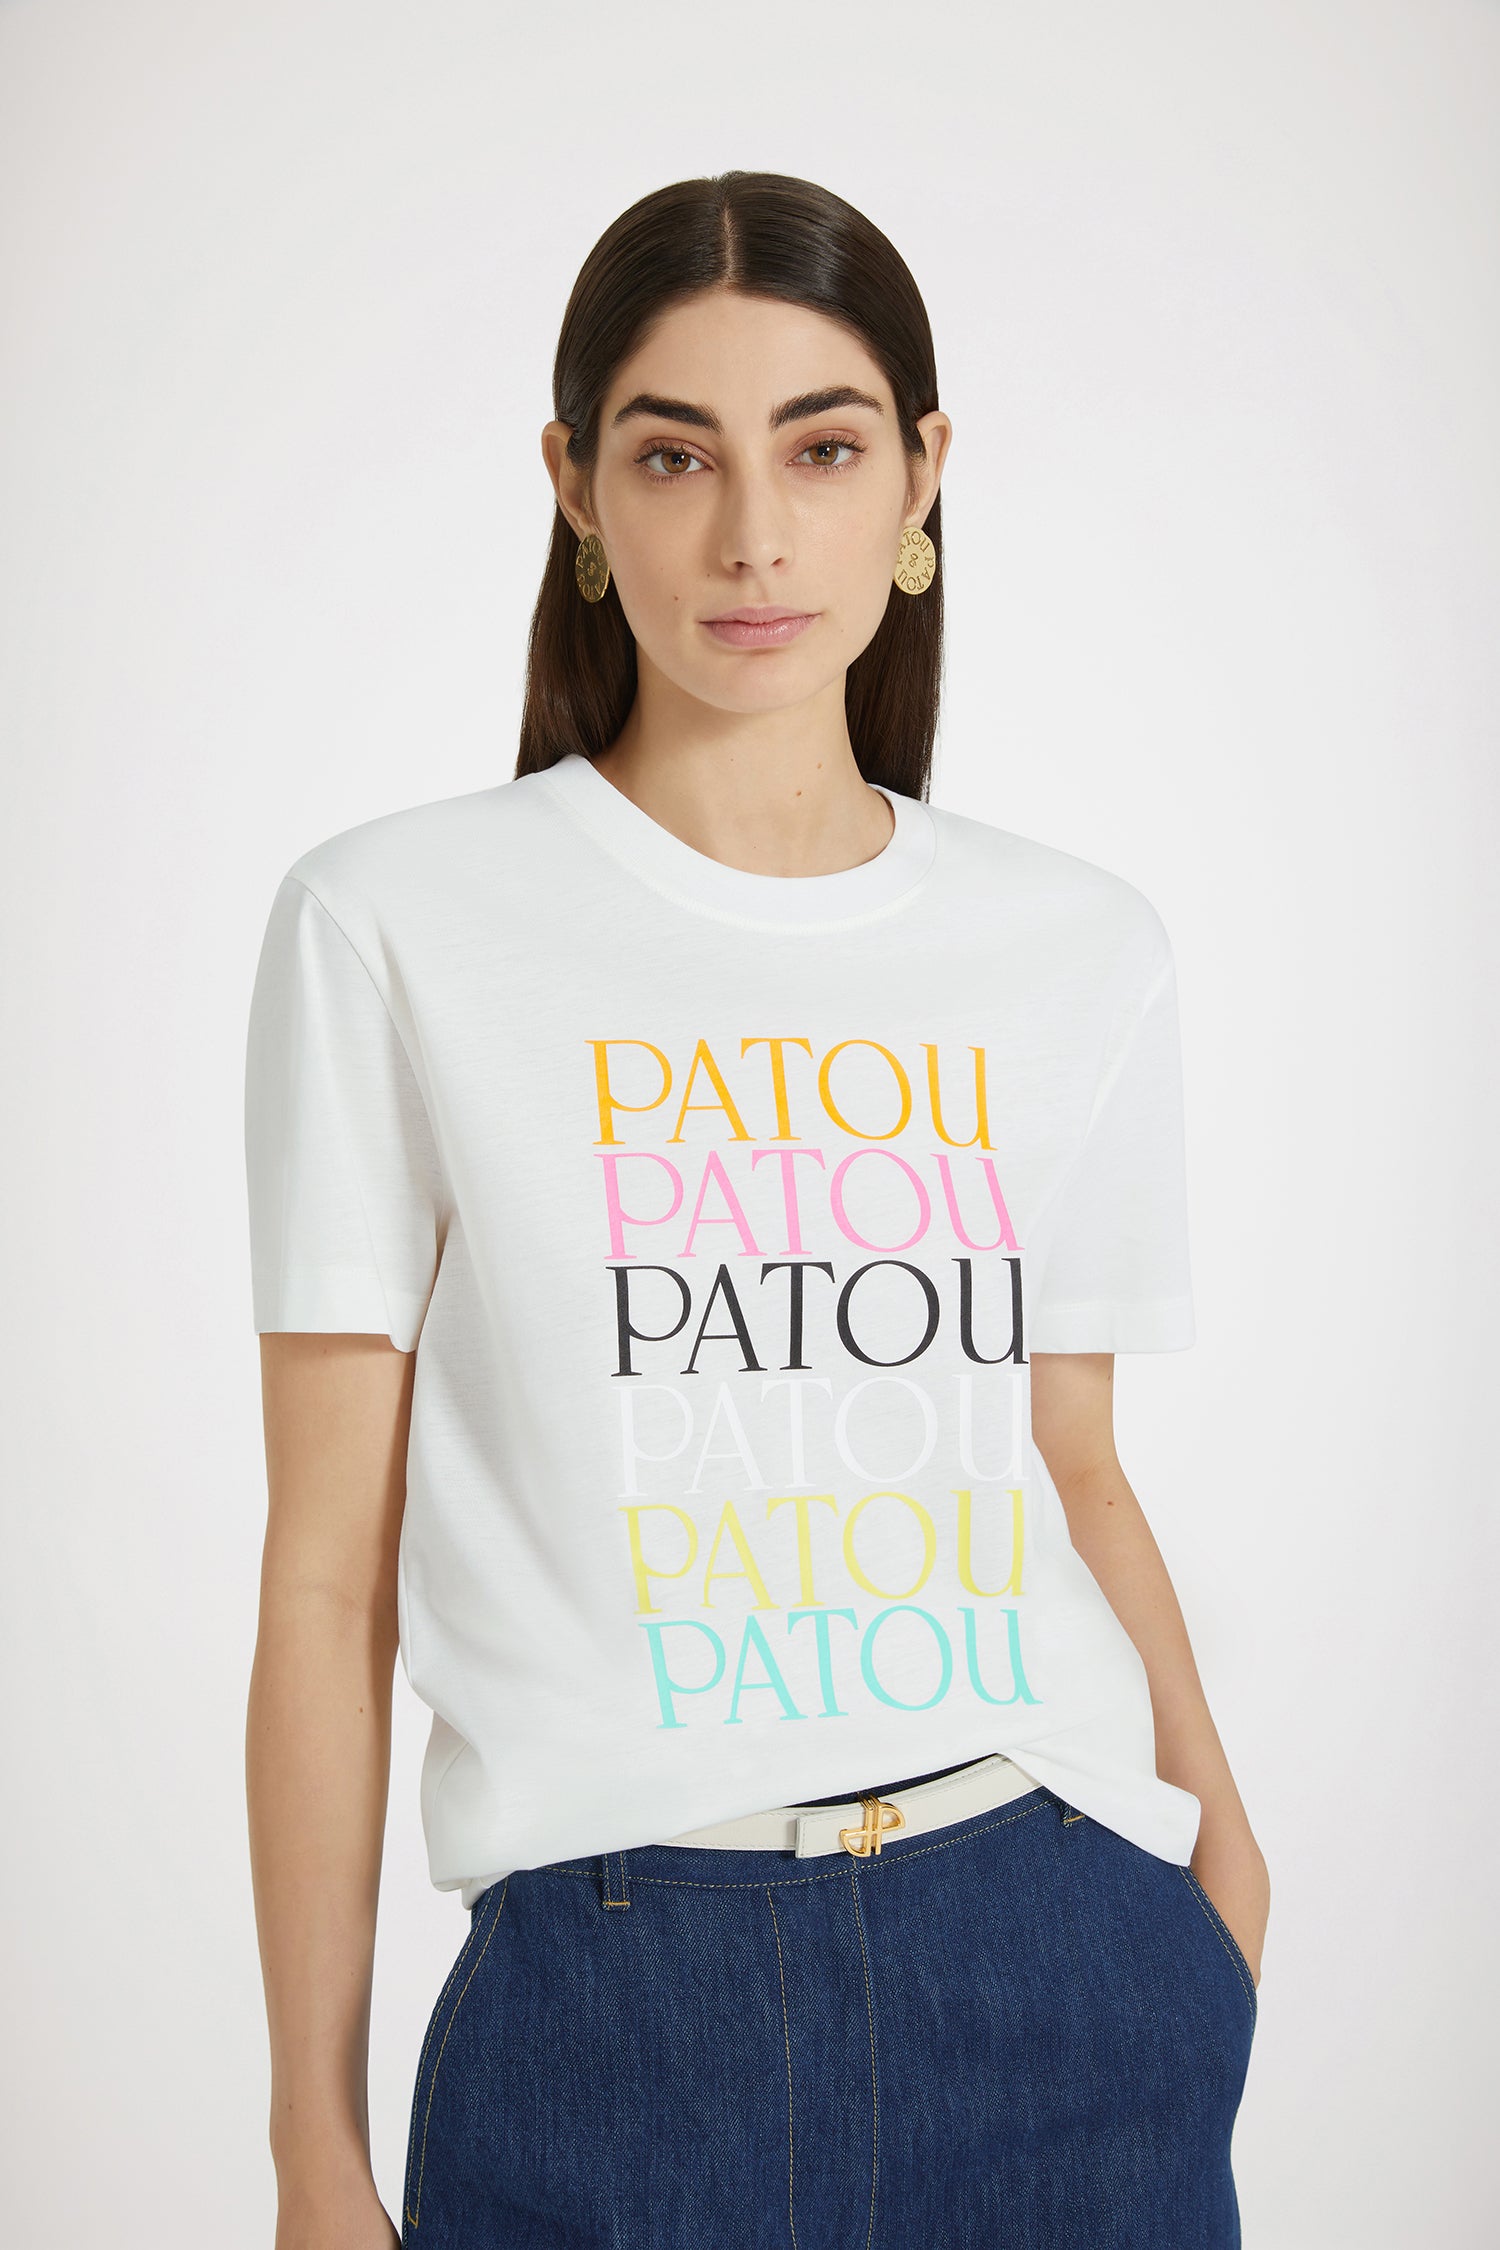 Patou パトゥ ロゴ Tシャツ ブラック Sサイズ - Tシャツ/カットソー